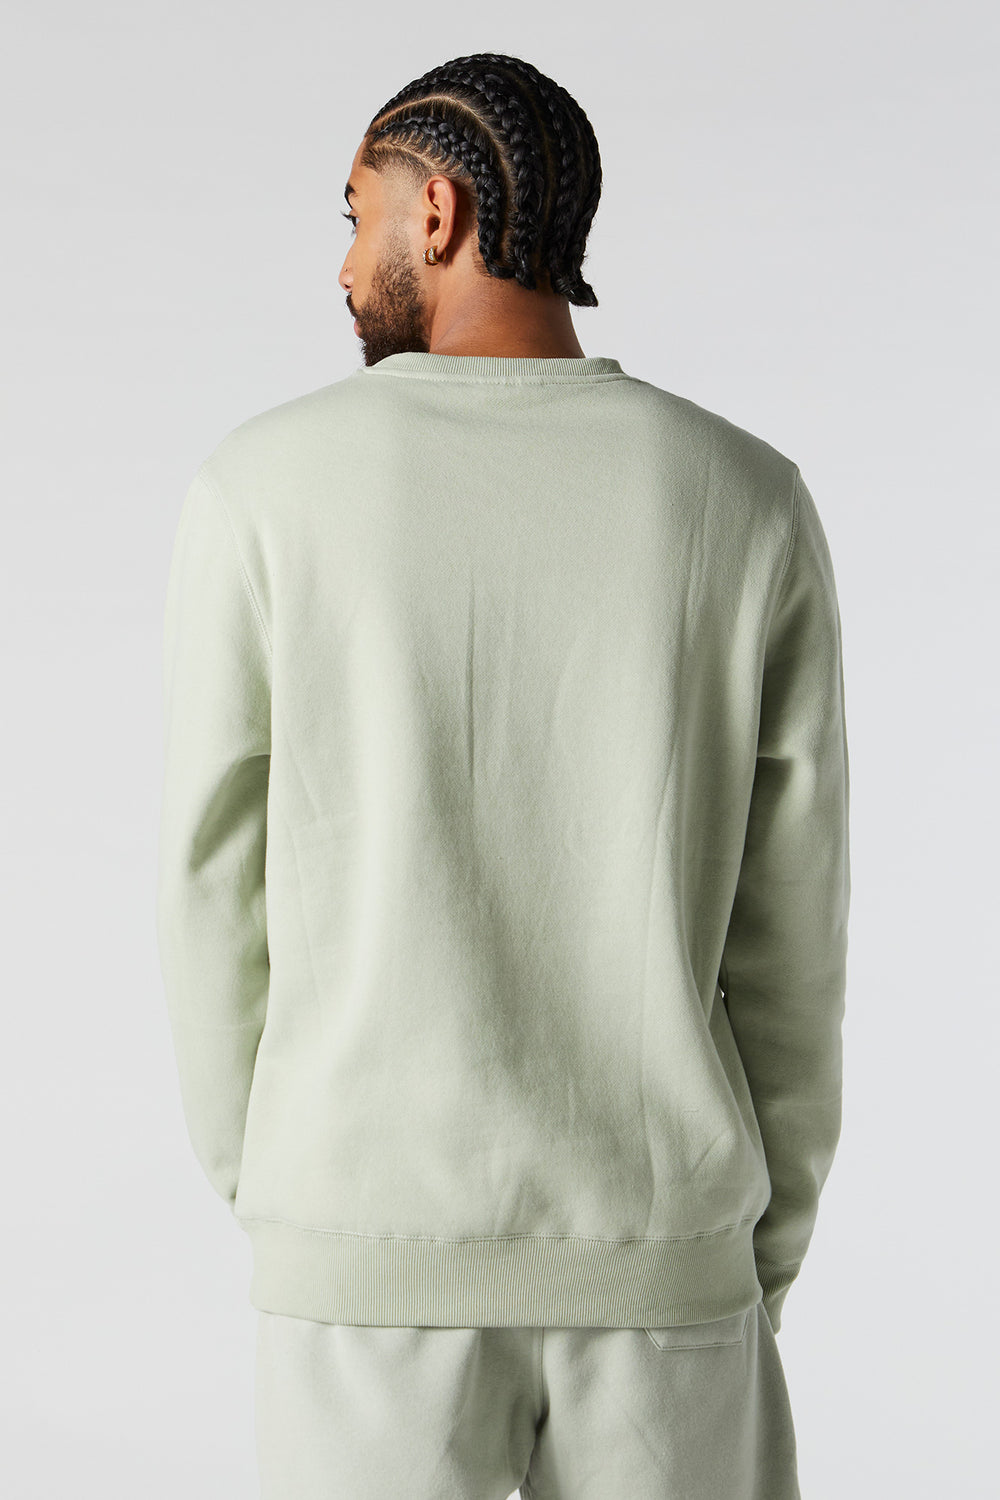 Solid Fleece Sweatshirt Solid Fleece Sweatshirt 27